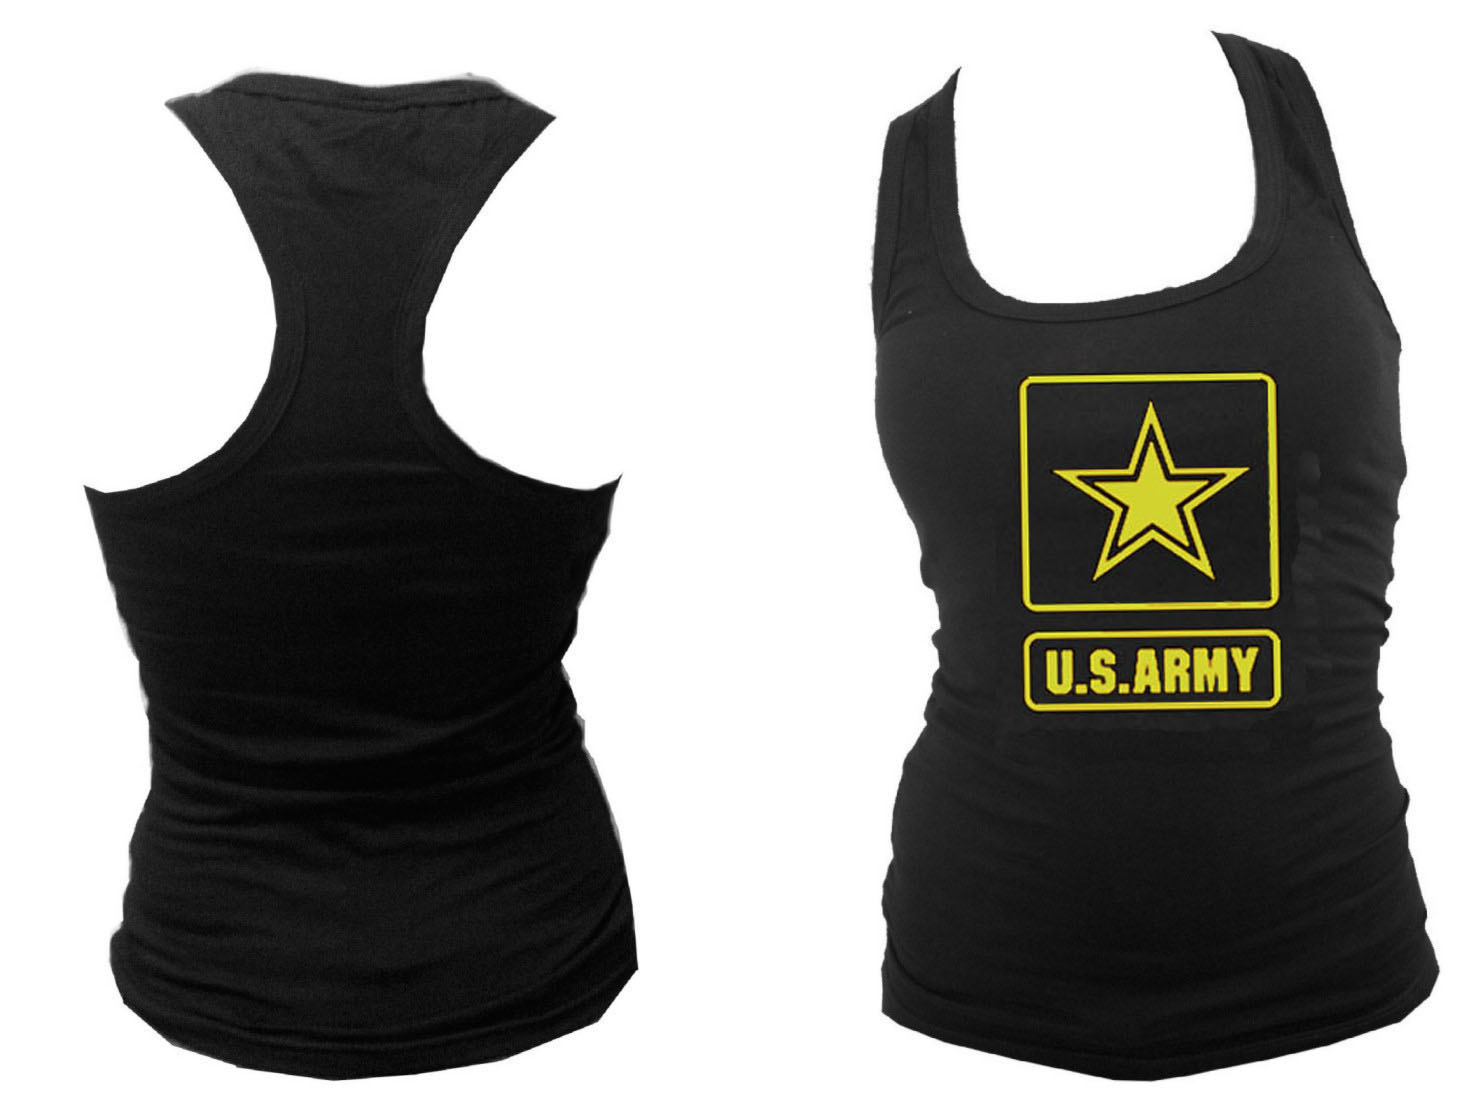 US army emblem sleeveless women black tank top L/XL